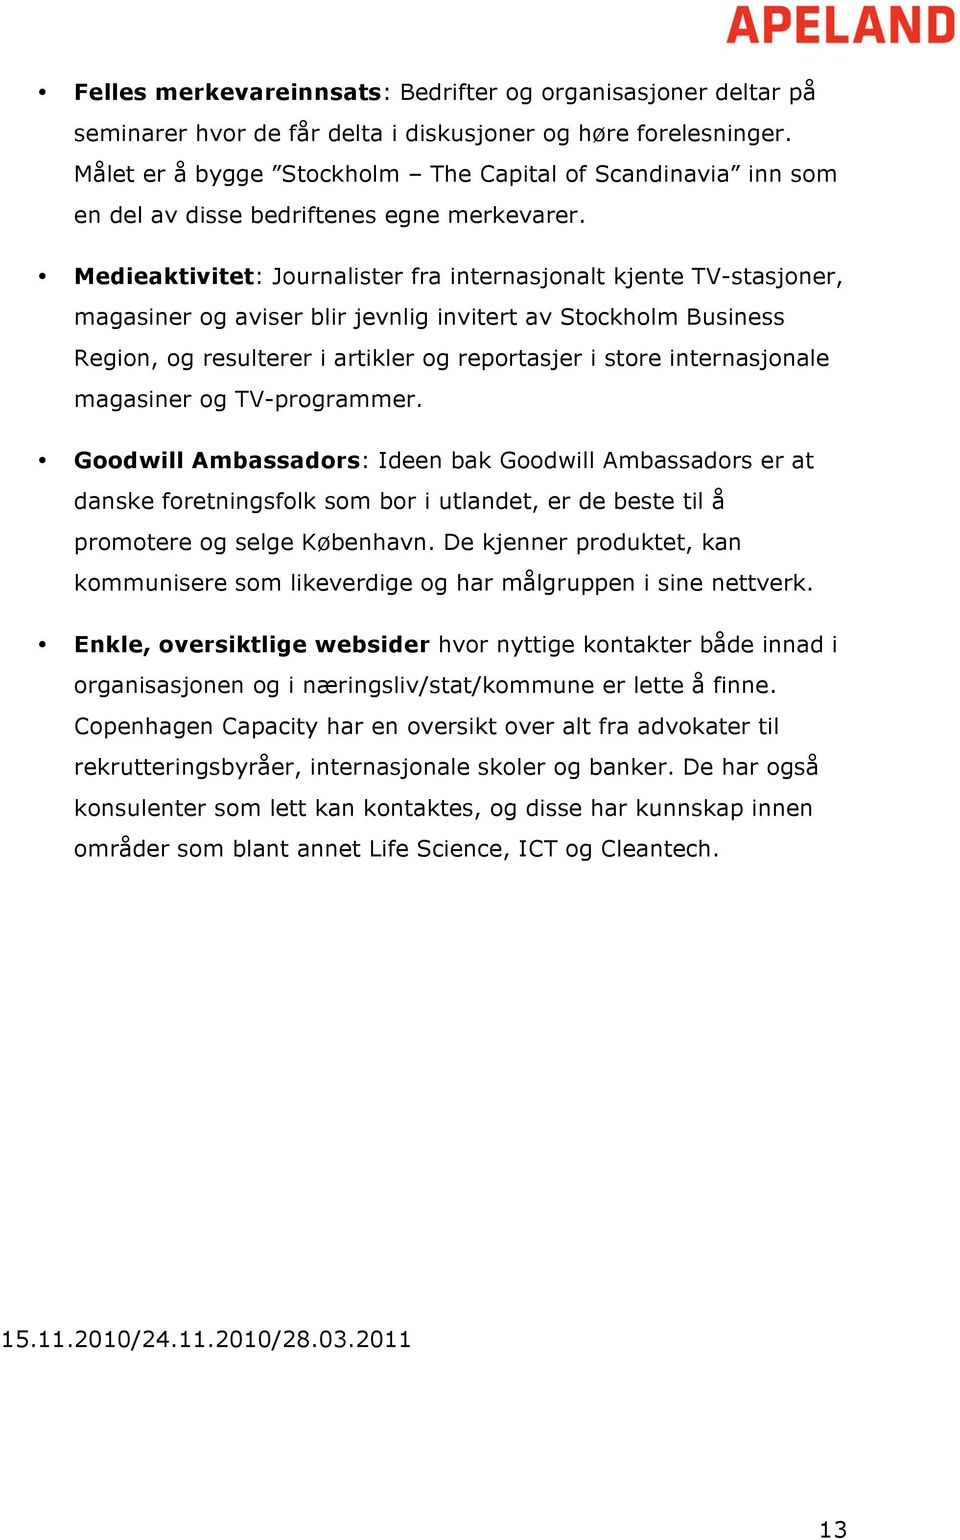 Medieaktivitet: Journalister fra internasjonalt kjente TV-stasjoner, magasiner og aviser blir jevnlig invitert av Stockholm Business Region, og resulterer i artikler og reportasjer i store